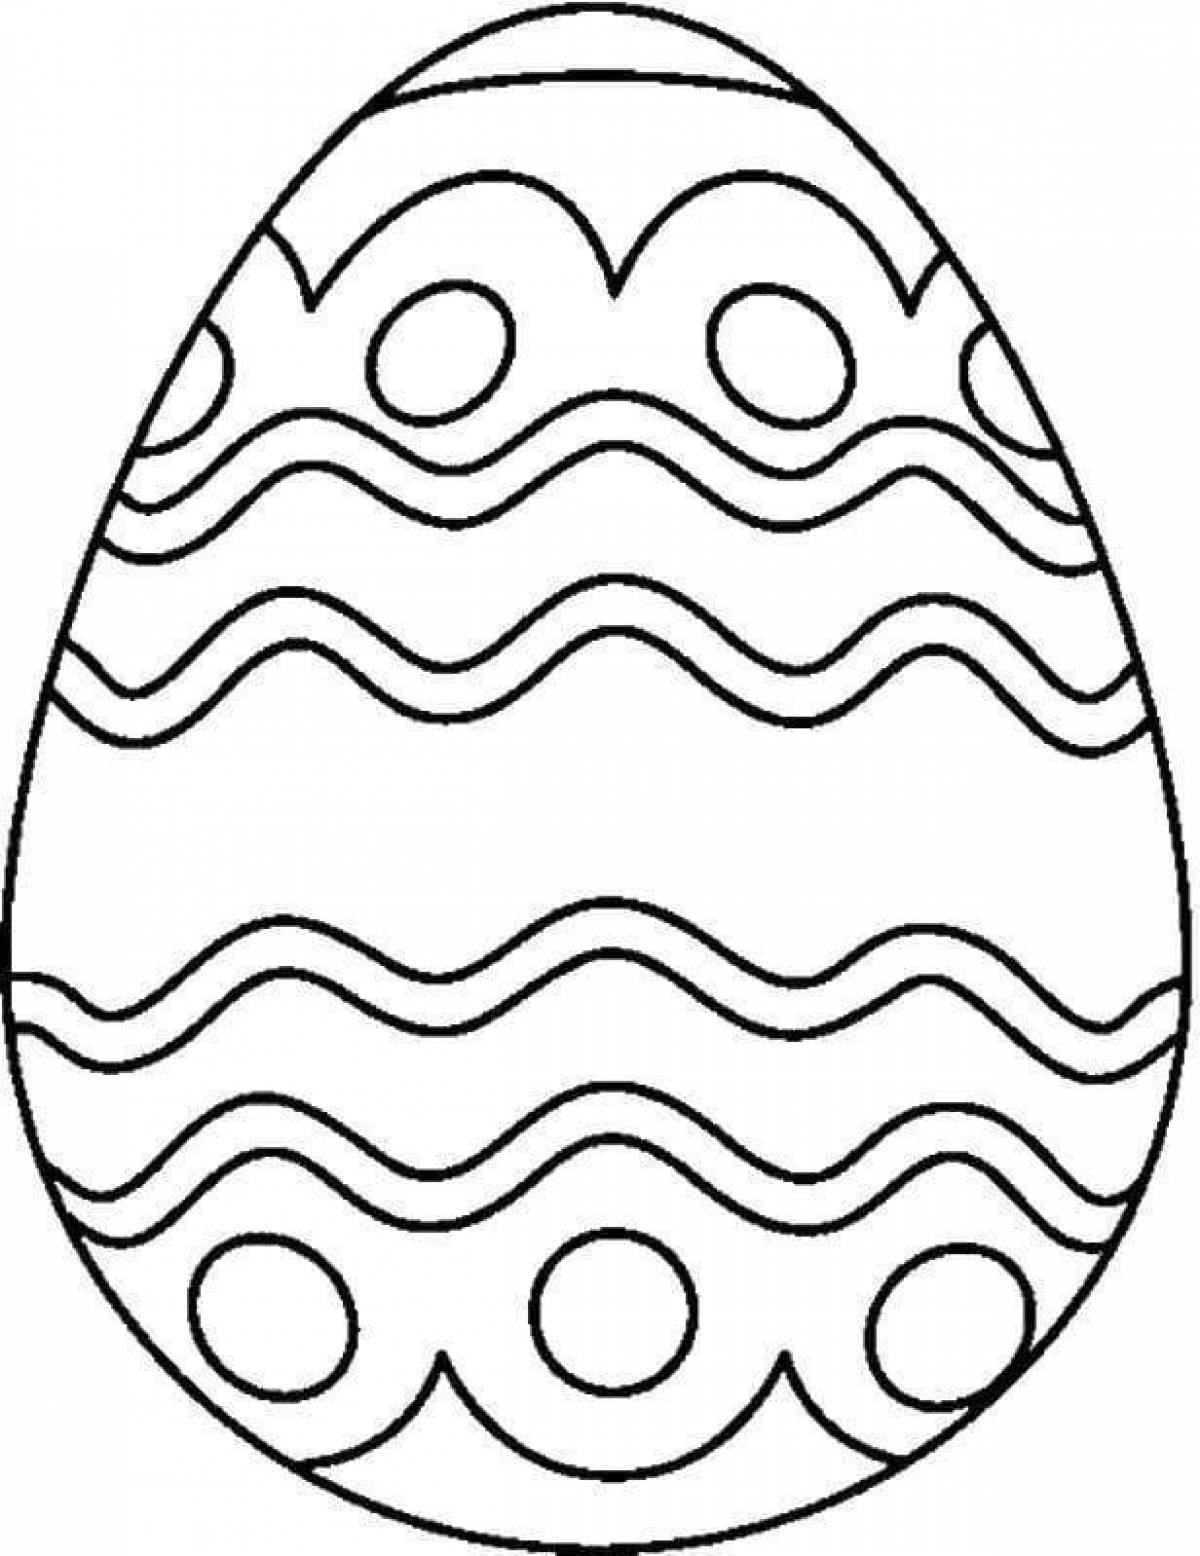 Egg for kids #4